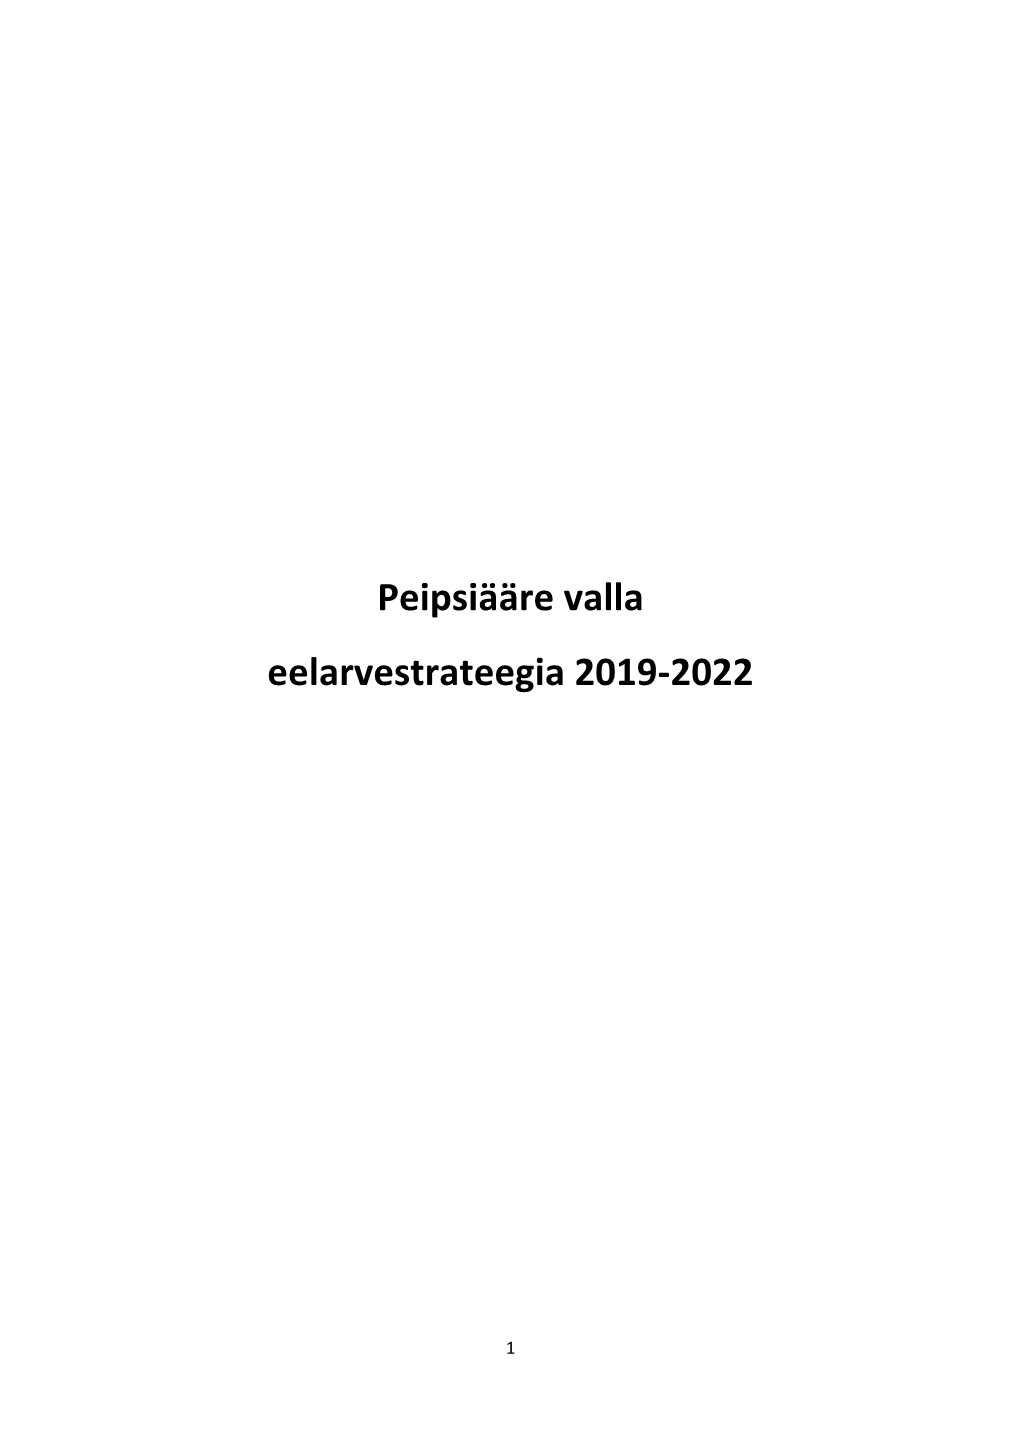 Peipsiääre Valla Eelarvestrateegia 2019-2022